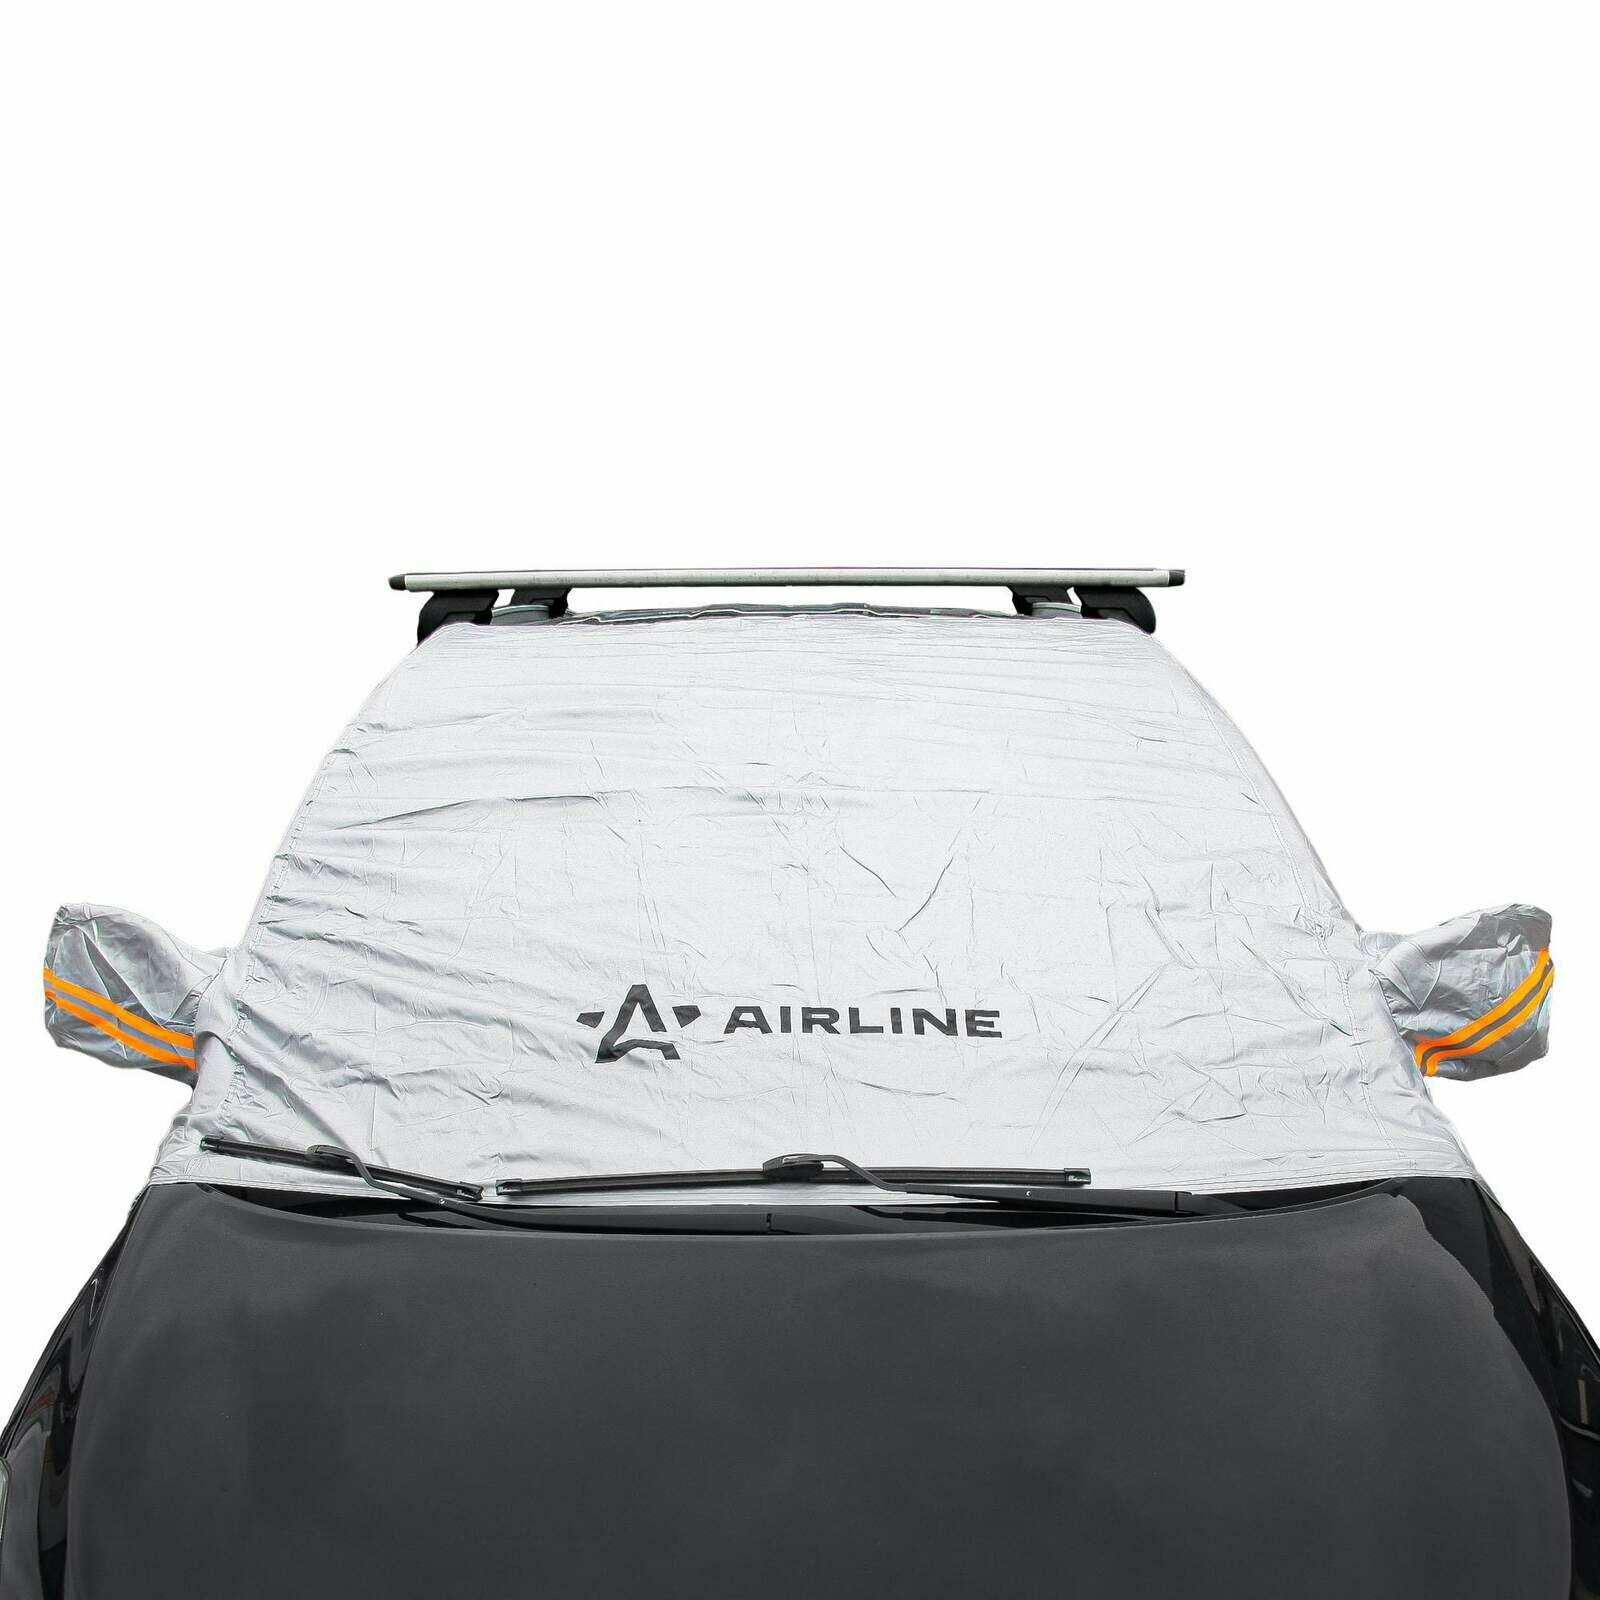 Чехол-тент на лобовое и передние стекла авто (130х140х52 см) ADCT002 AIRLINE